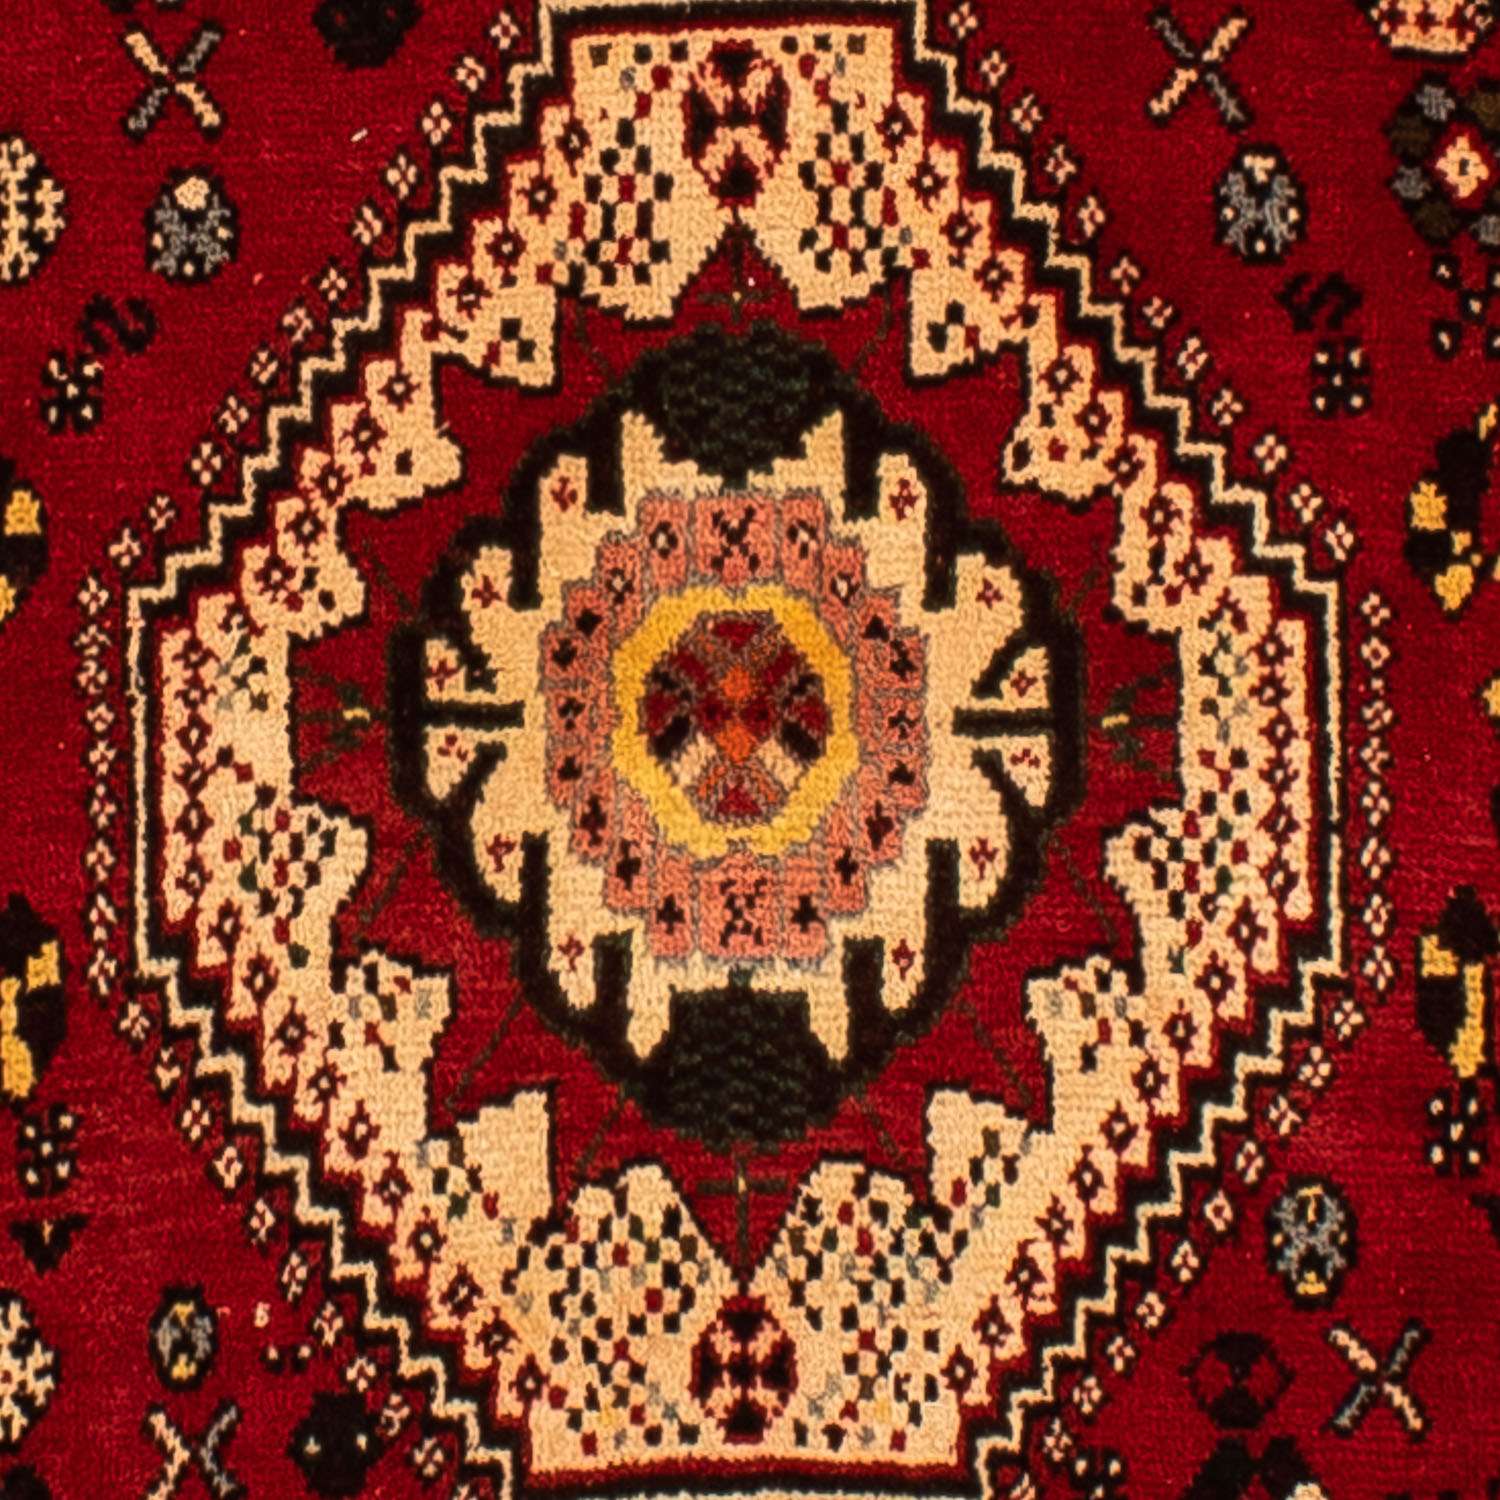 Tapete Persa - Nomadic - 295 x 210 cm - vermelho escuro